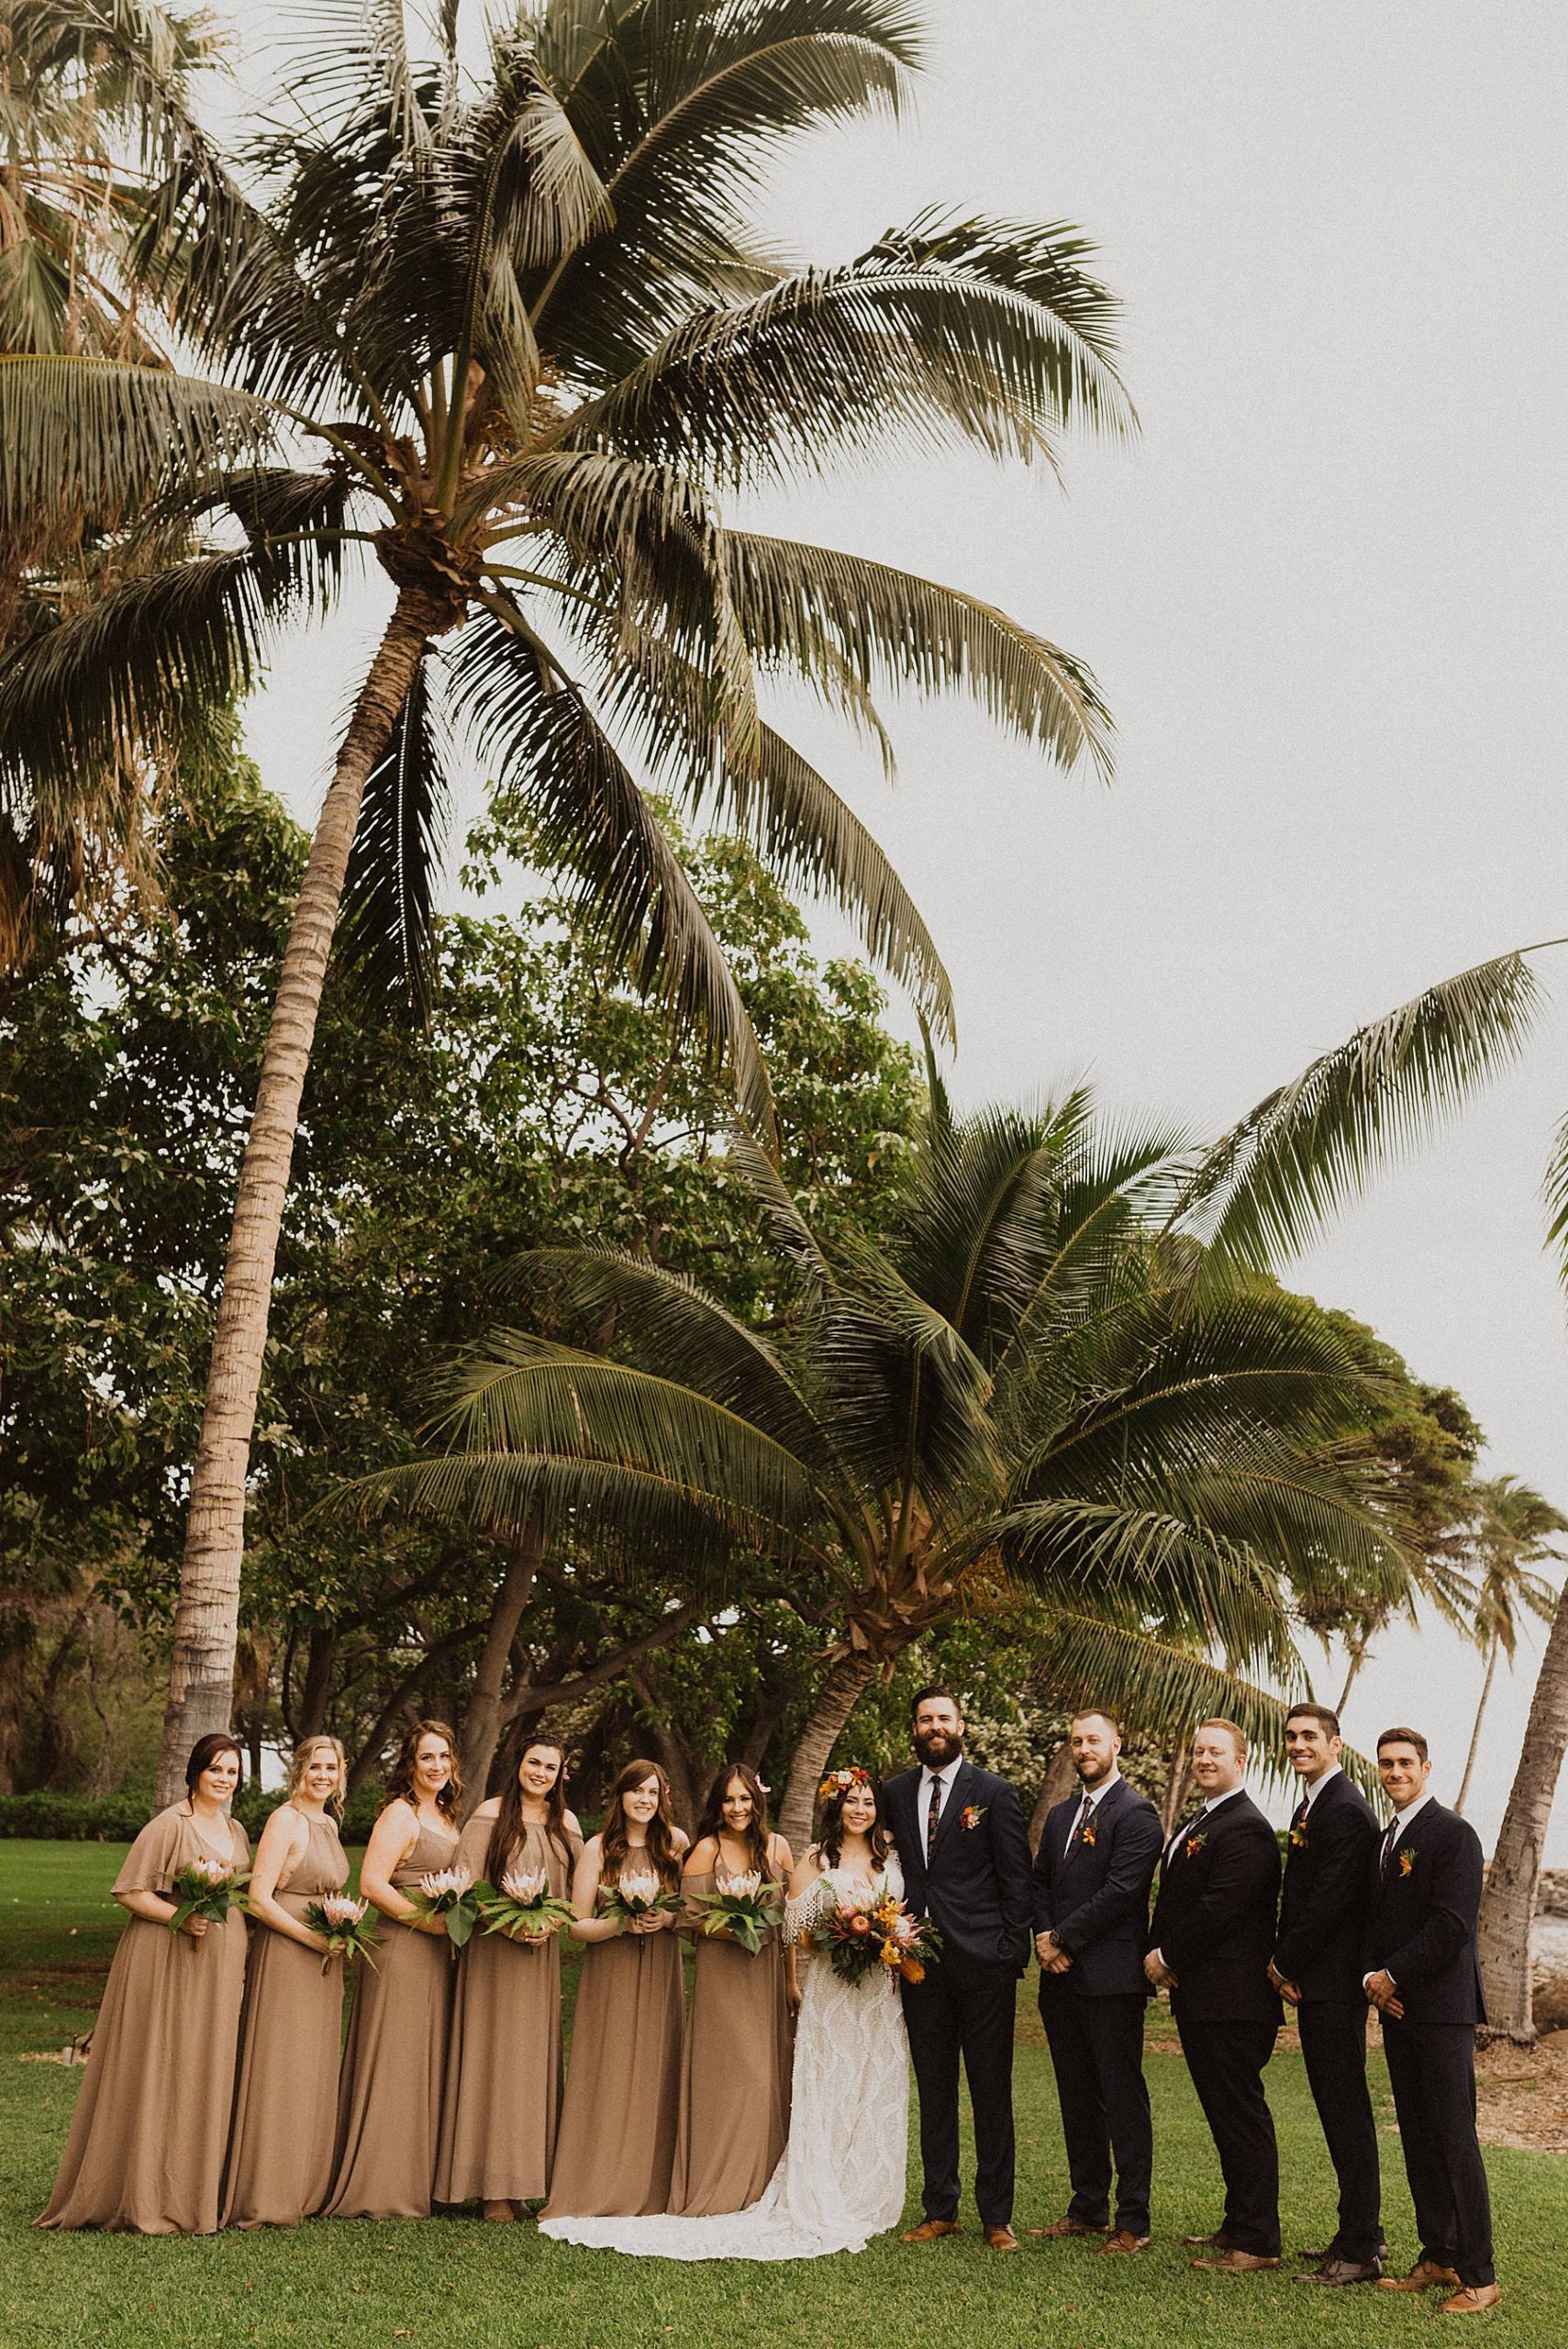 Maui Wedding Party Photos